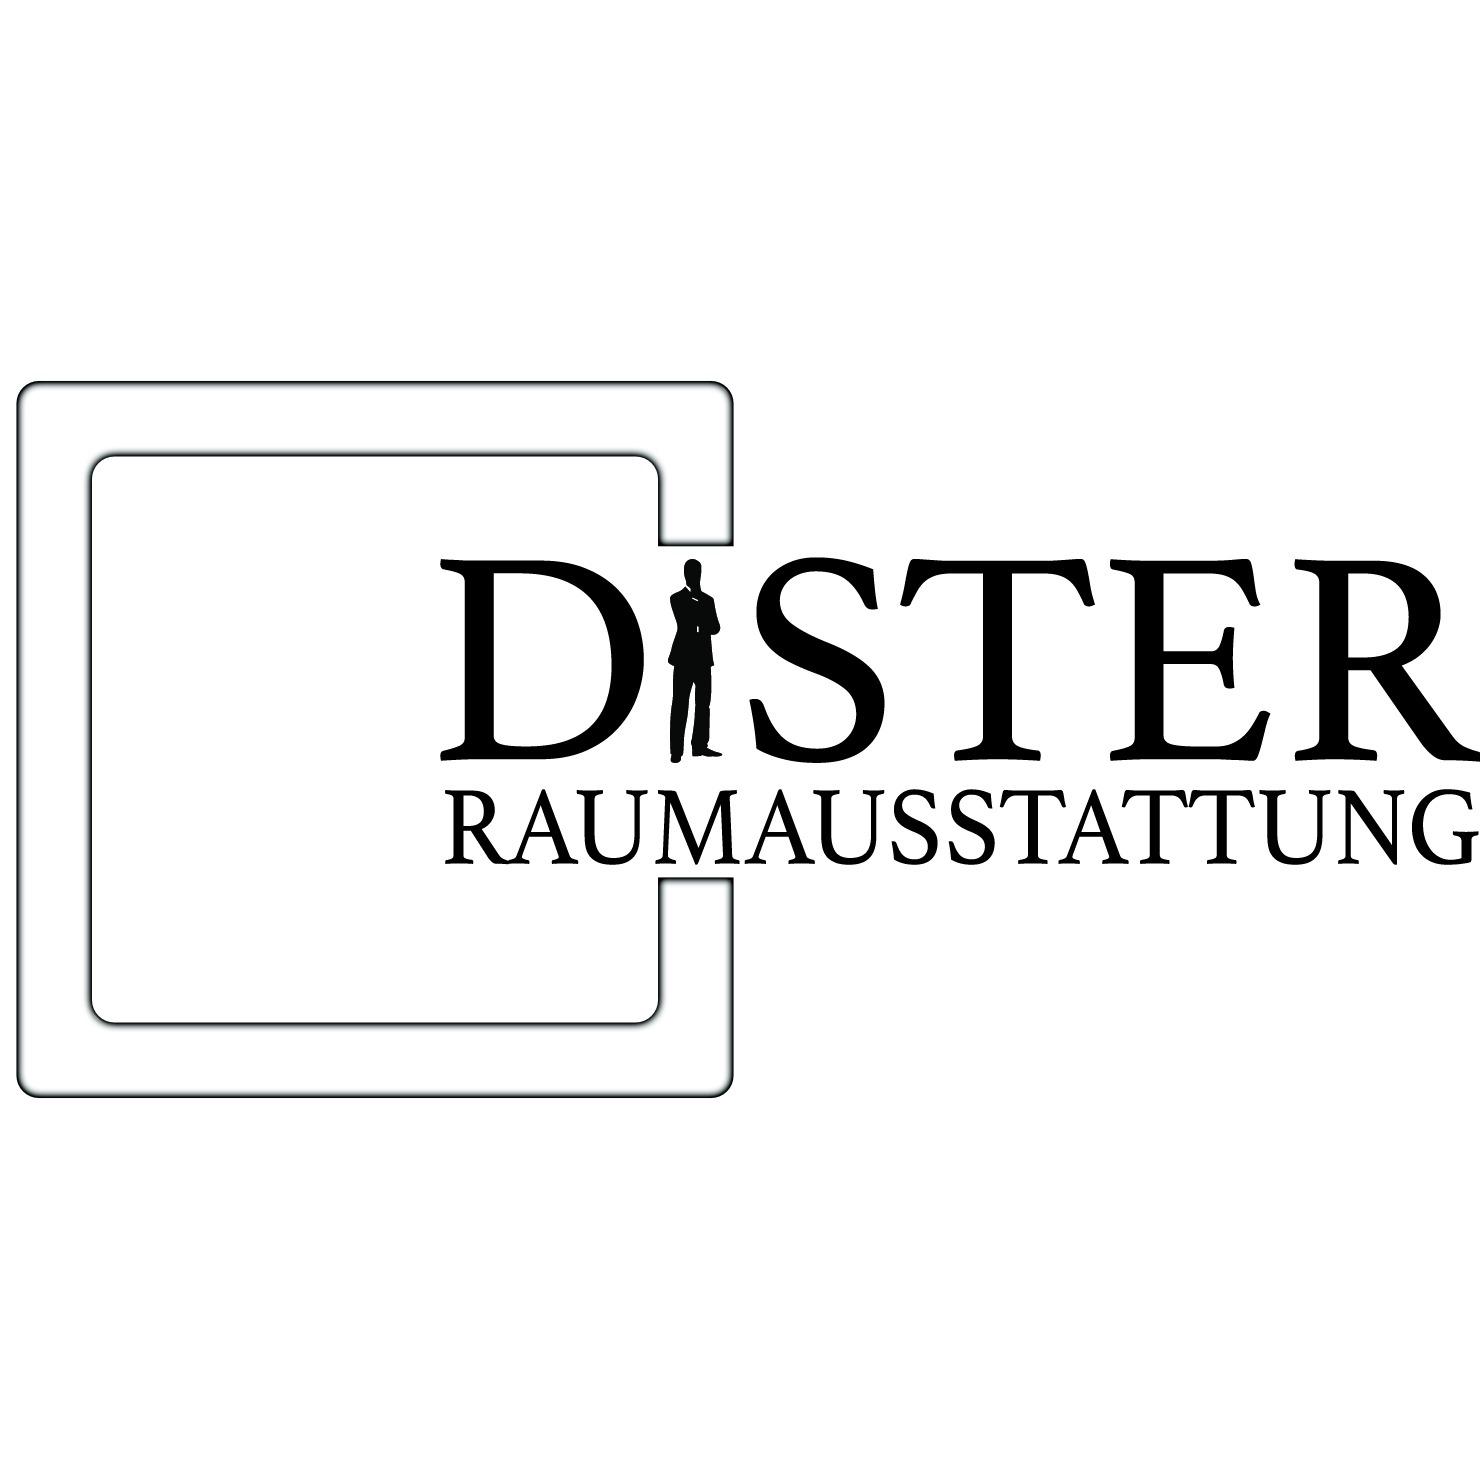 Dister Raumausstattung in Aschaffenburg - Logo